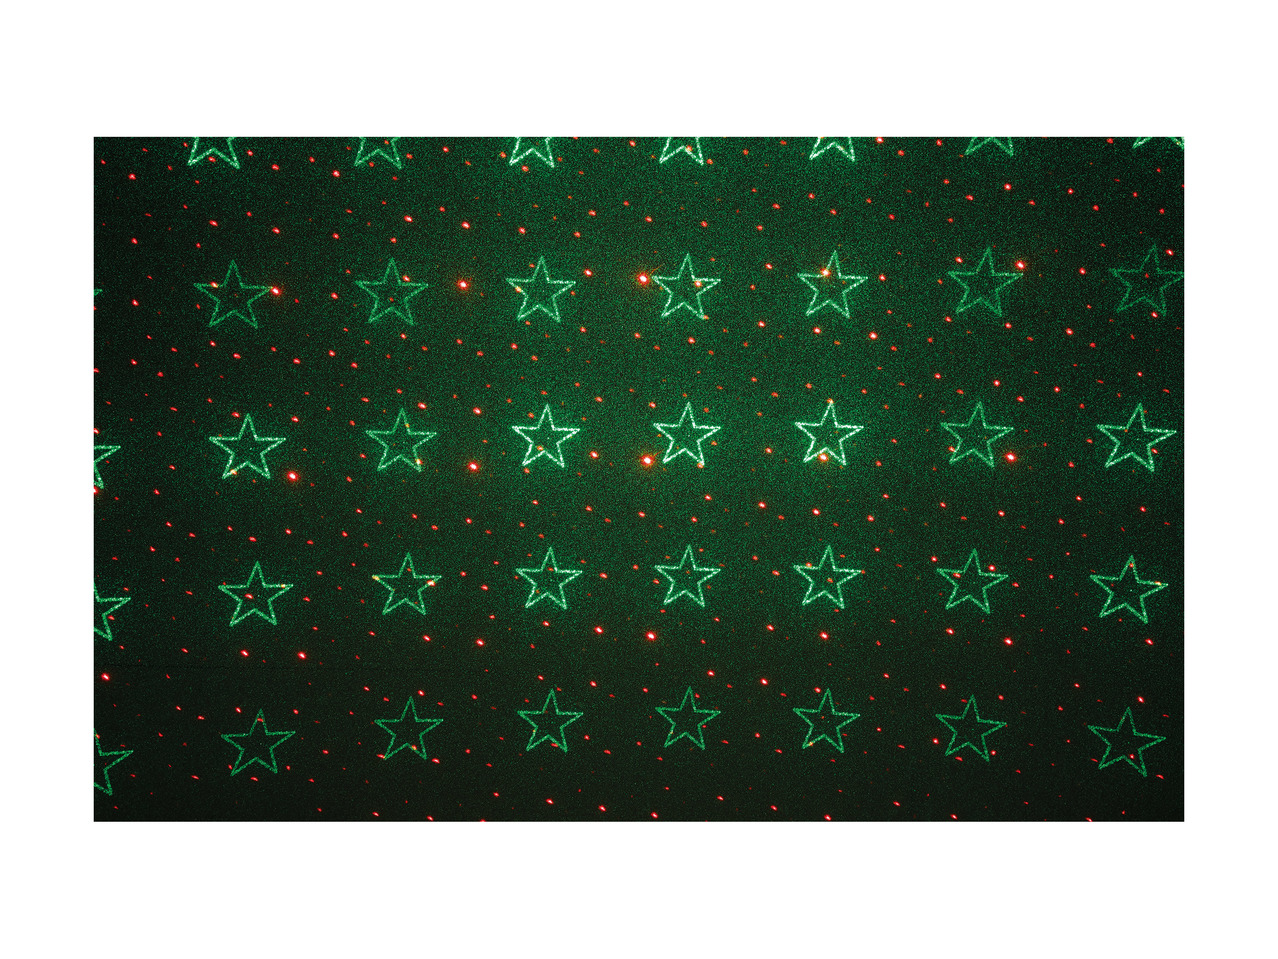 Melinera Laser Light Projector1